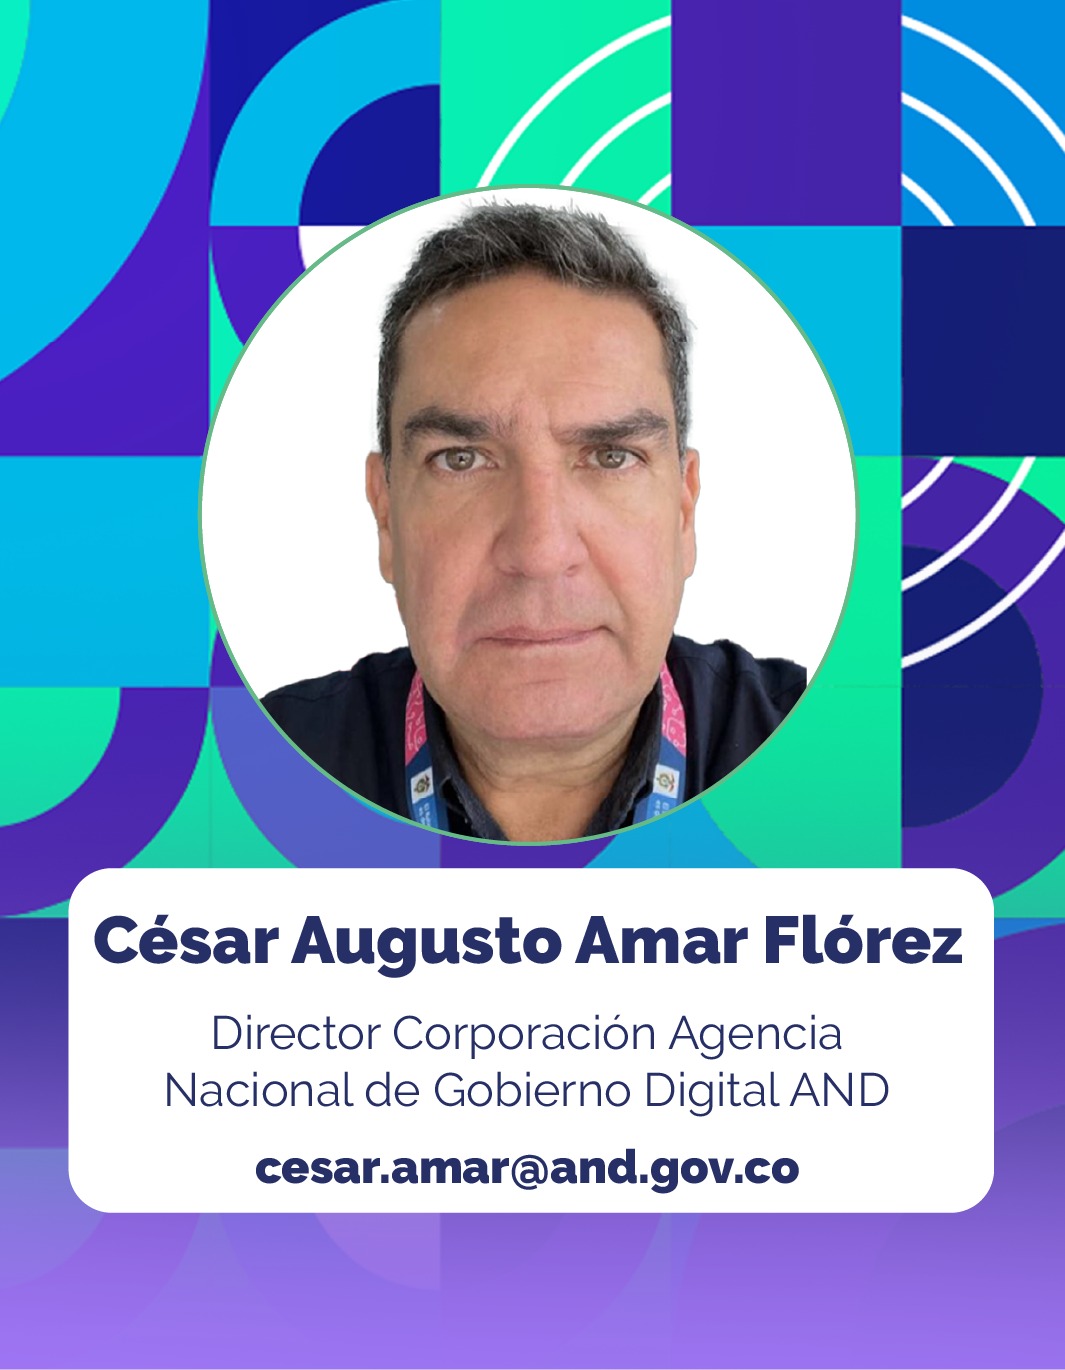 Foto de César Augusto Amar Flórez, Director de la Corporación Agencia Nacional de Gobierno Digital - AND